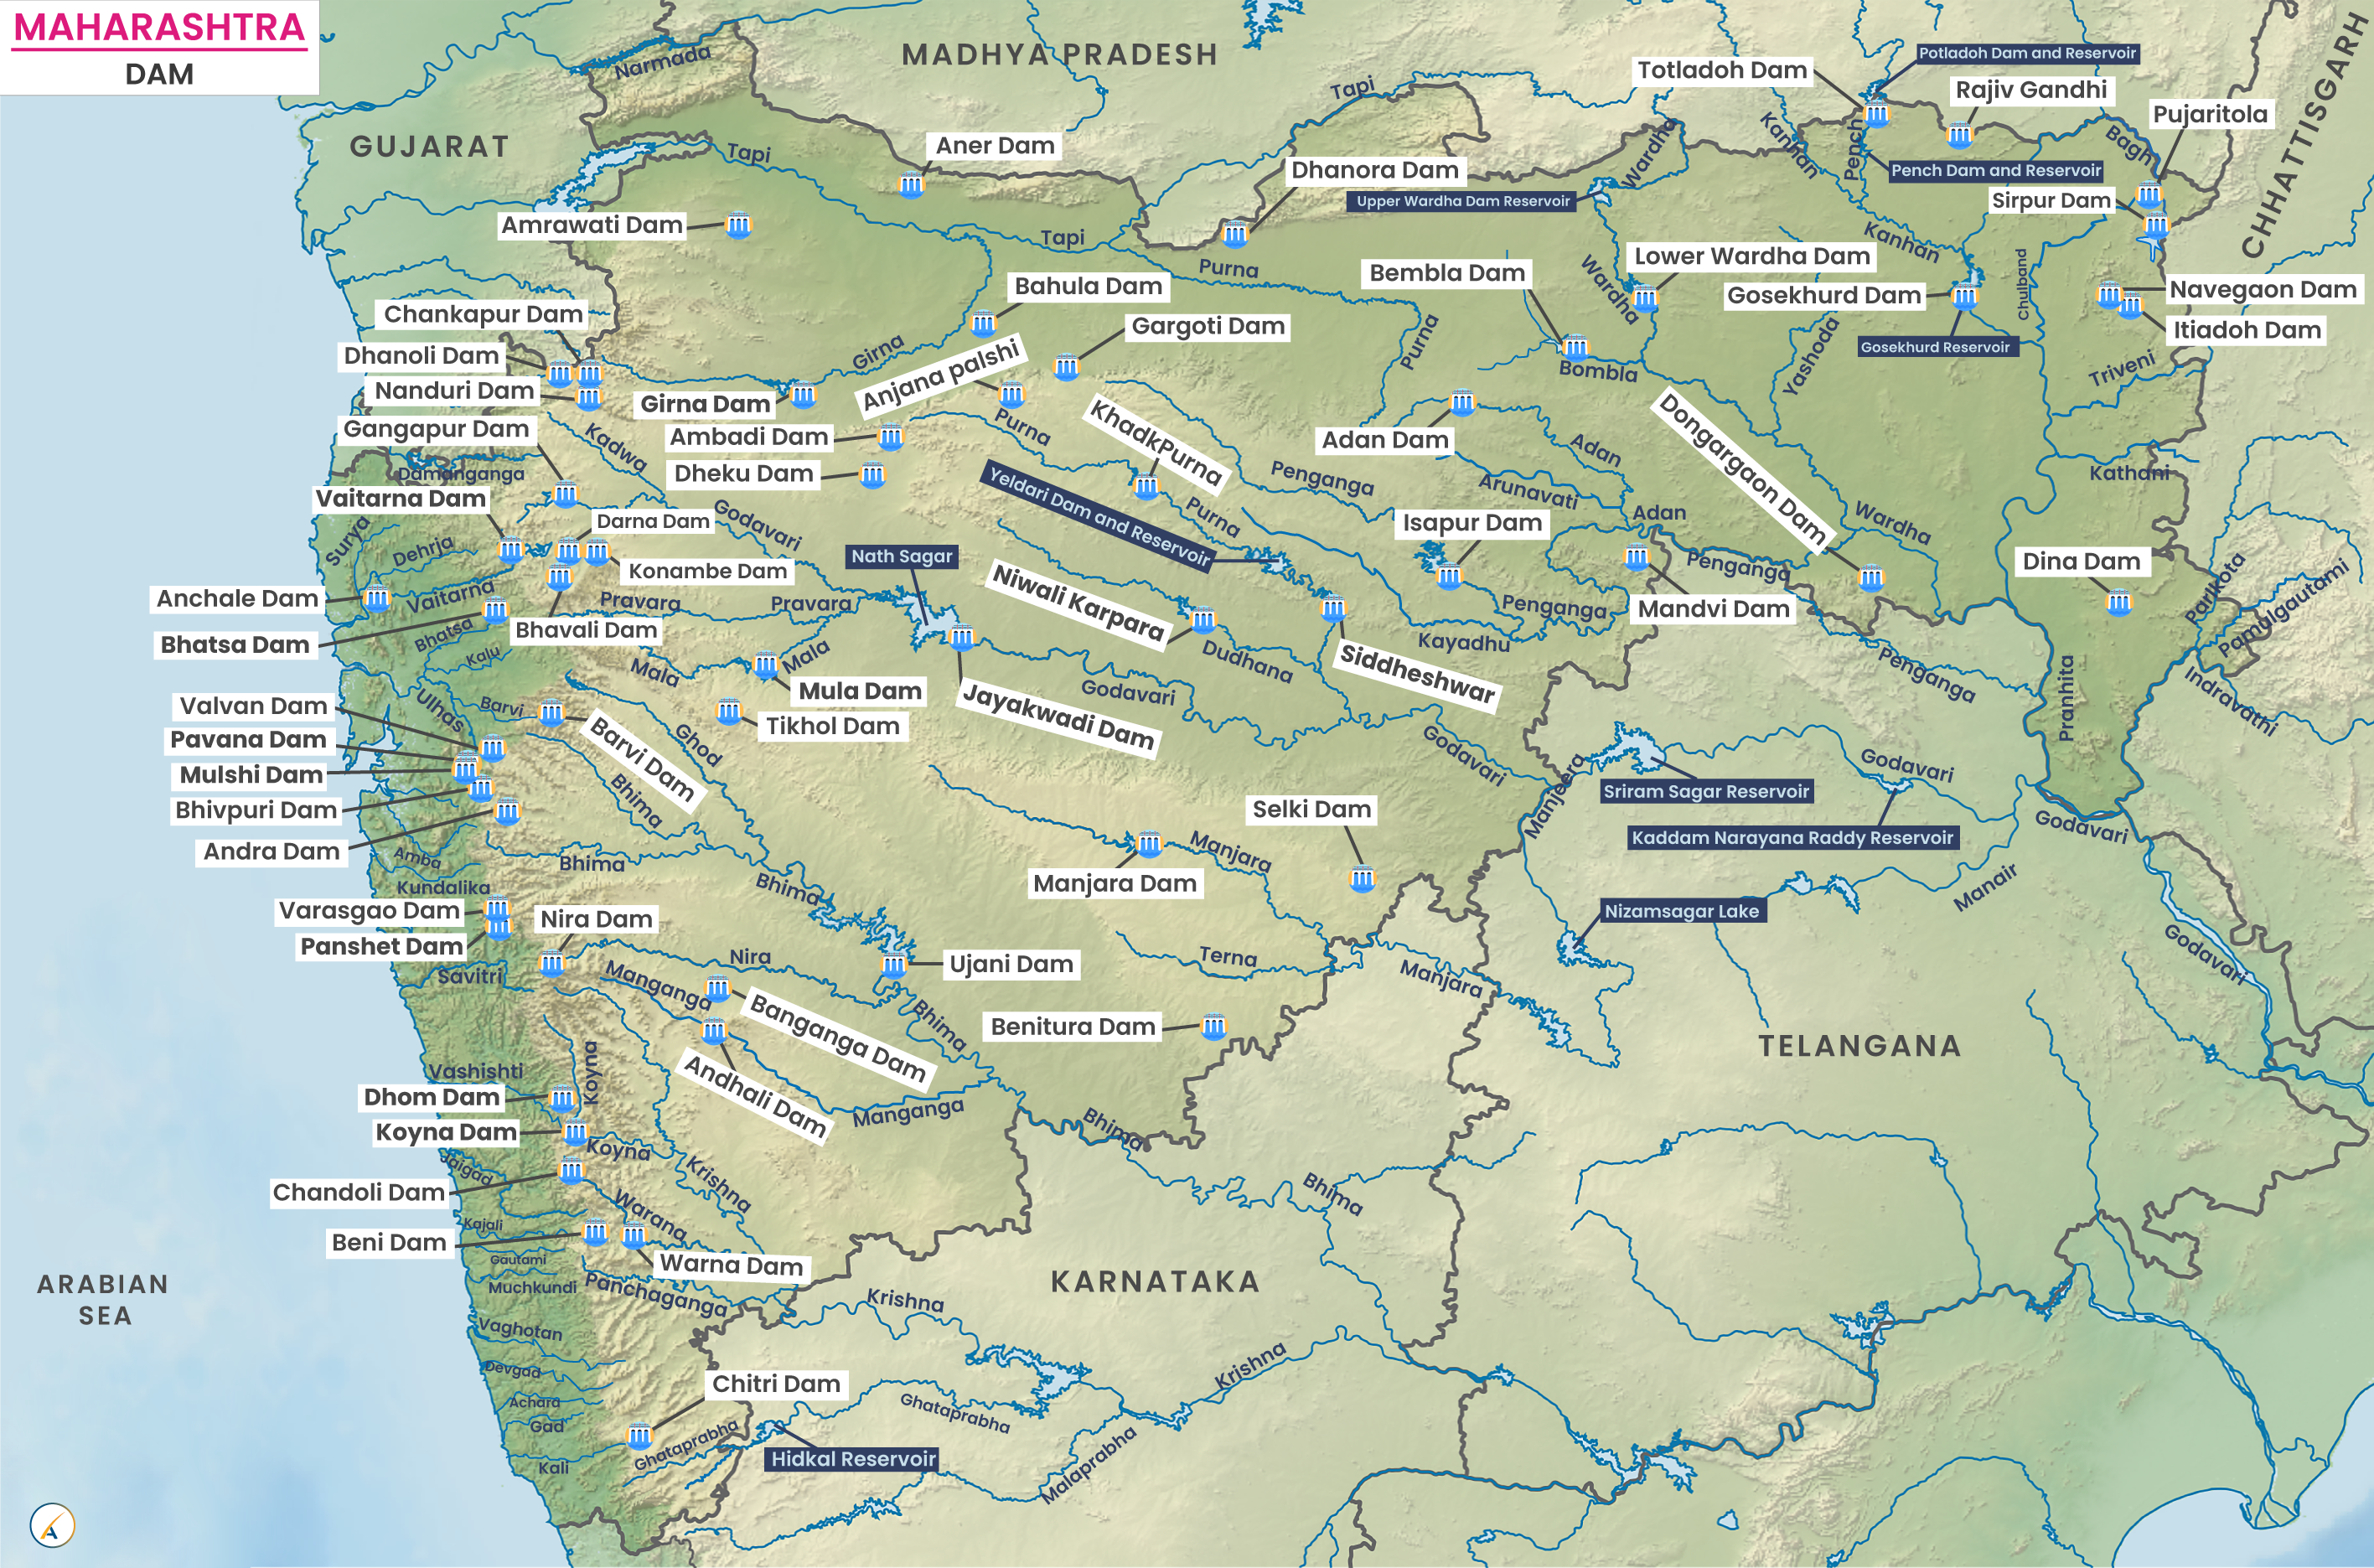 Major Dams in Maharashtra (Map)